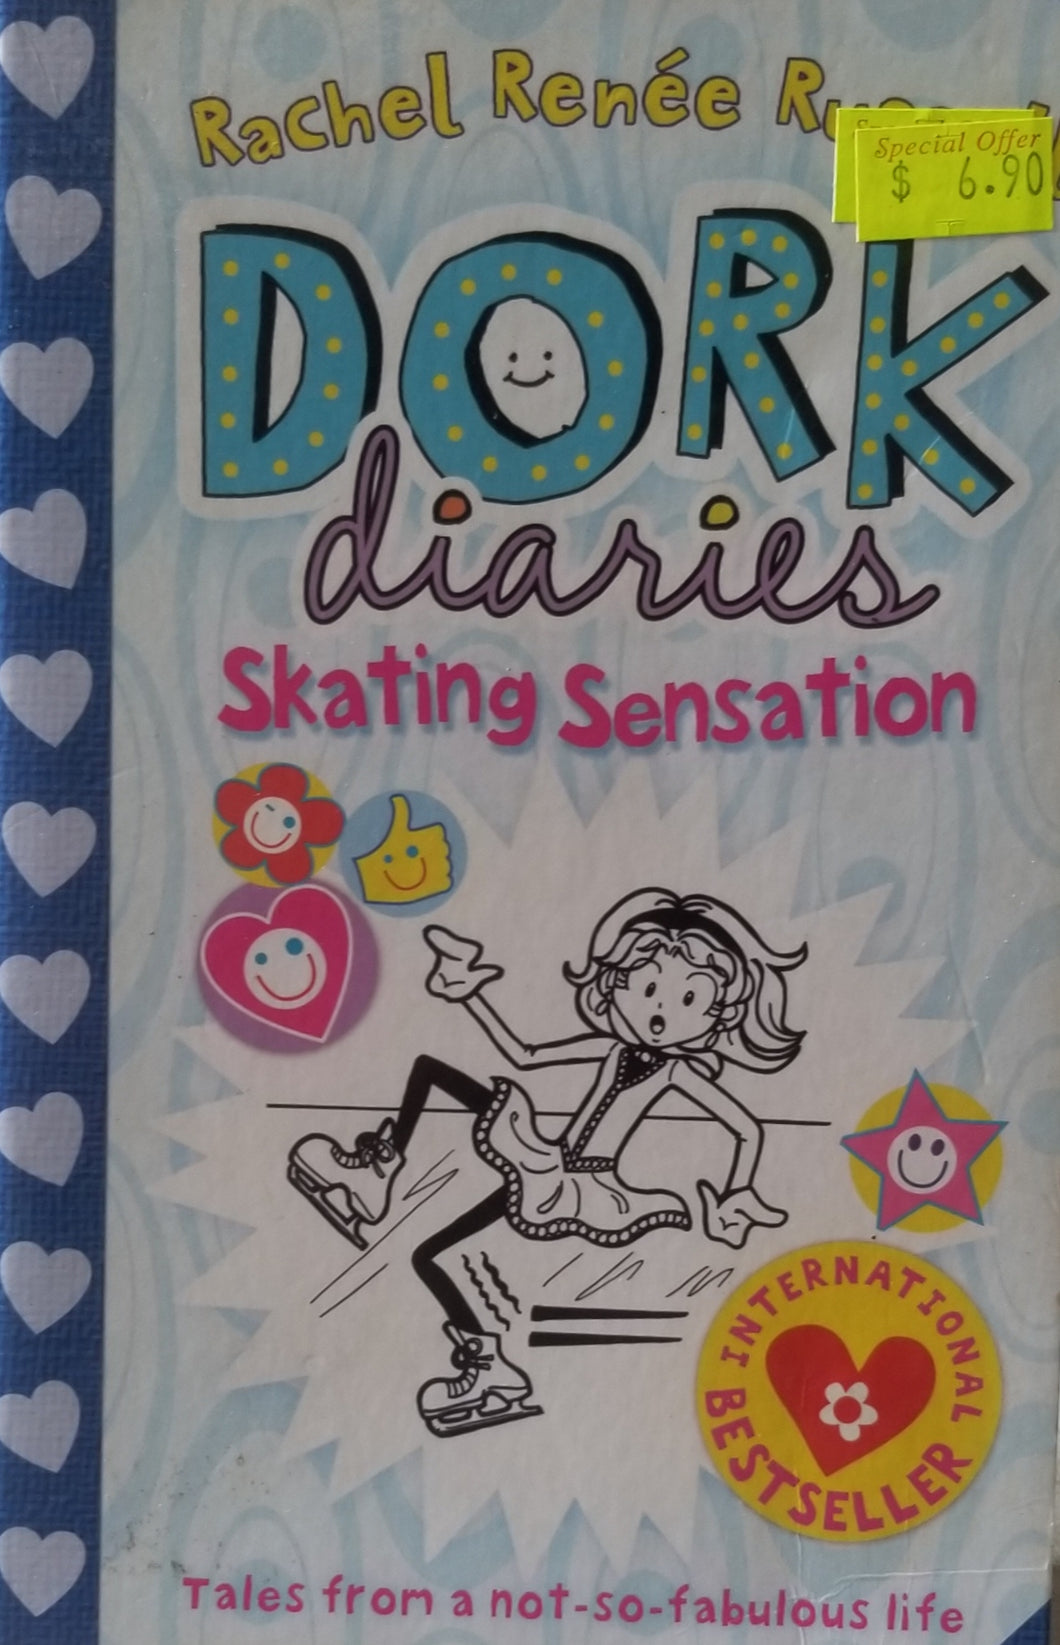 Dork Diaries: Skating Sensation - Rachel Renee Russell